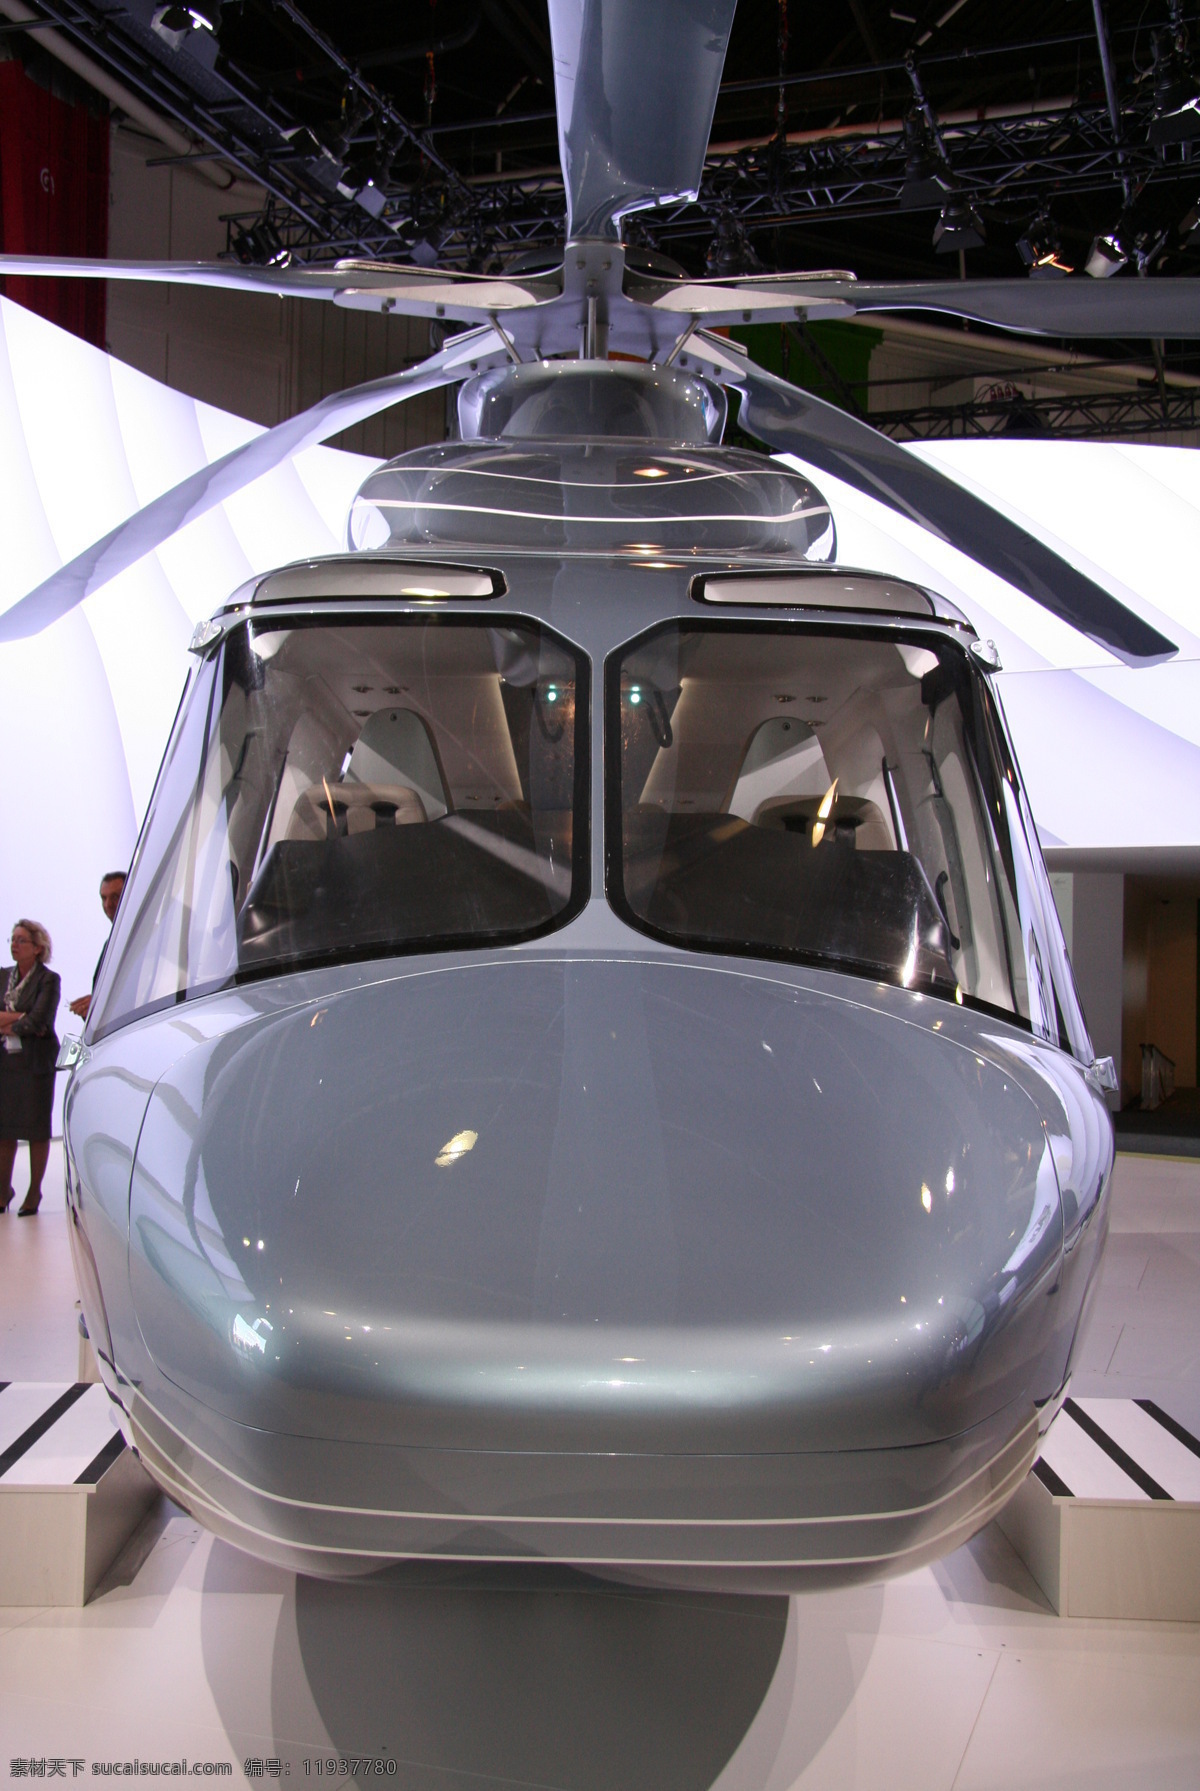 直升机 飞行 航空 航天 军事 军事武器 武器 现代科技 直升飞机 展览 防务 家居装饰素材 展示设计